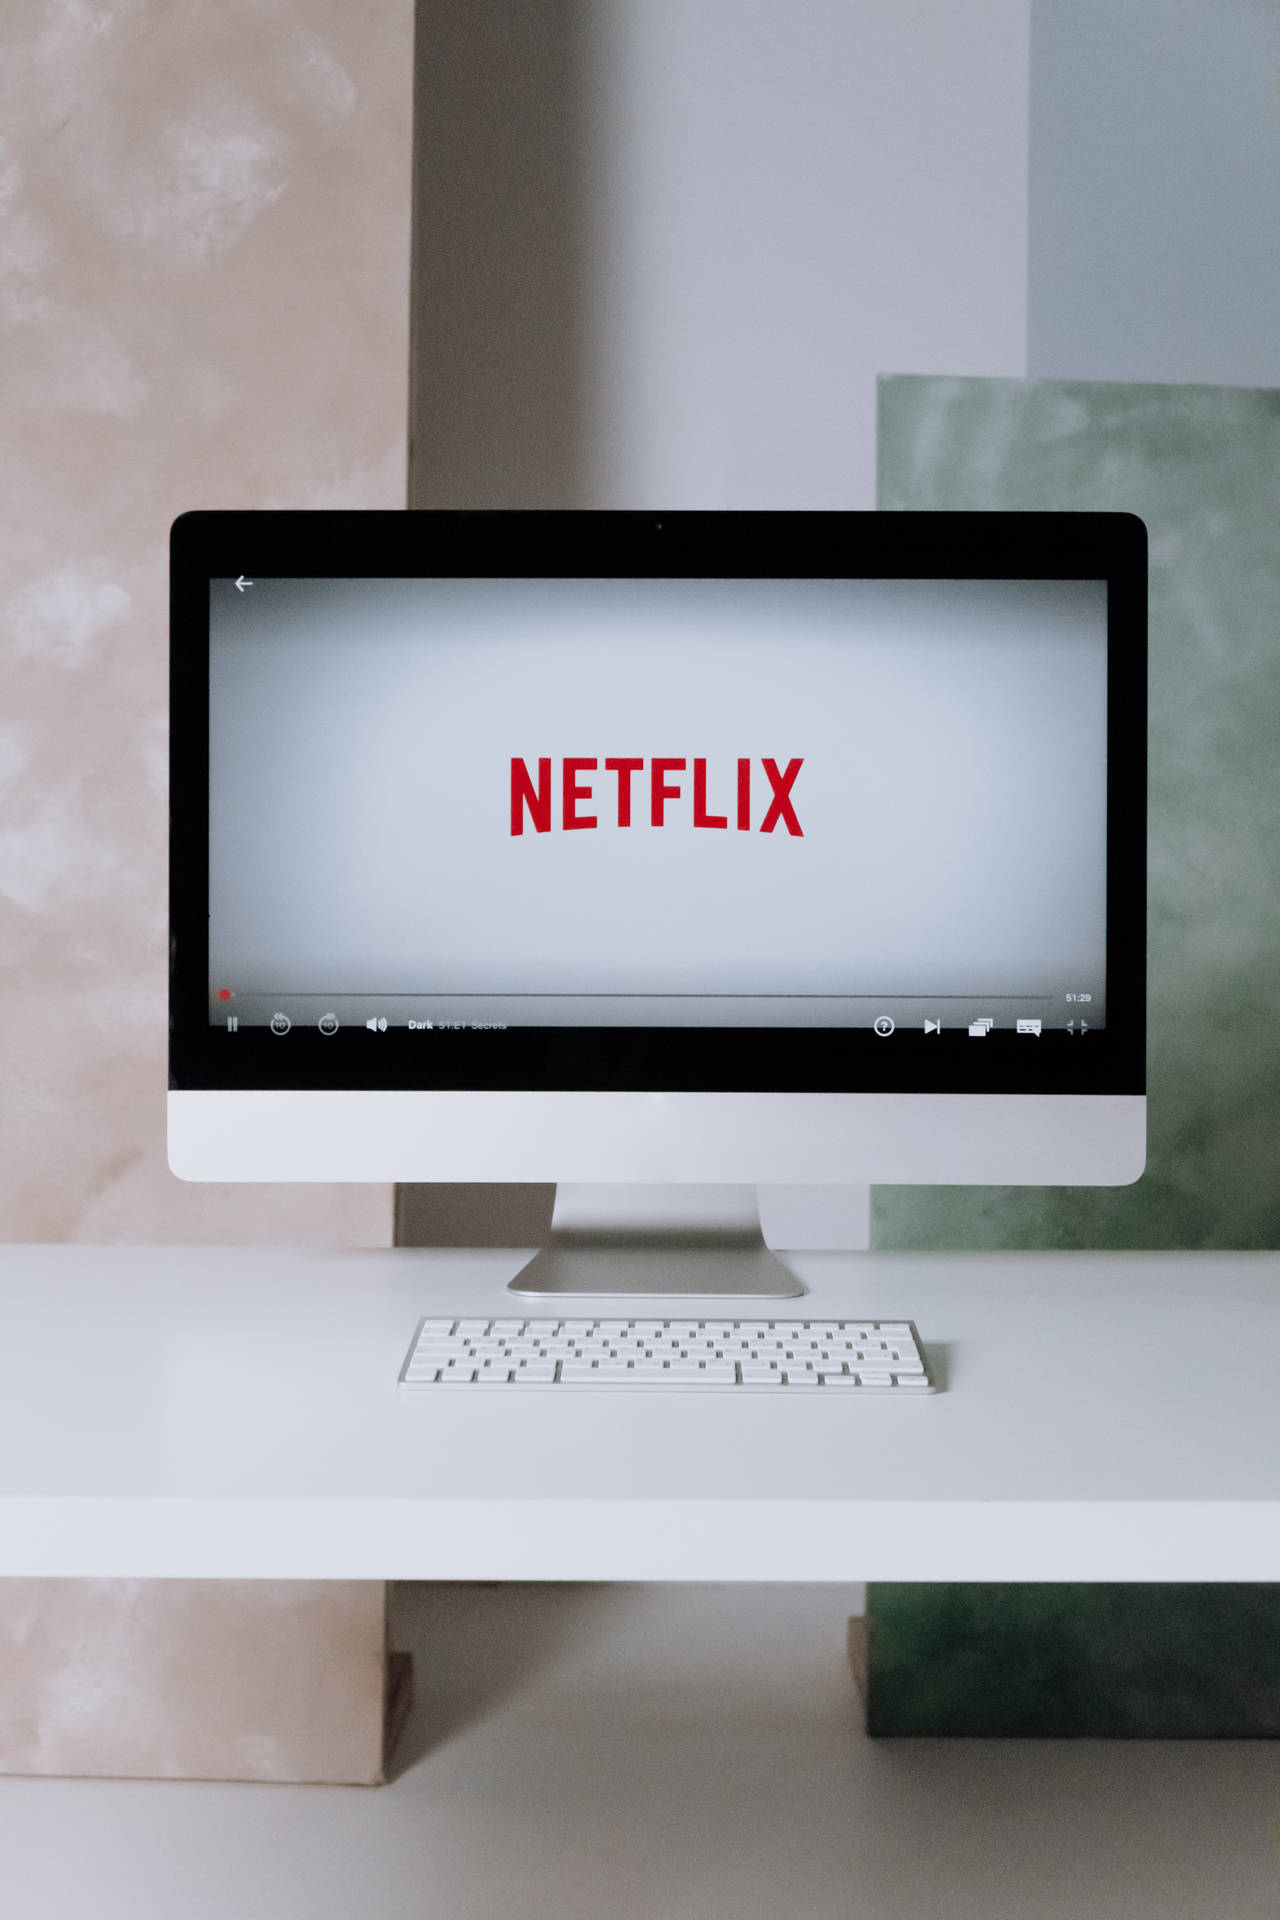 Netflix On Computer Screen Wallpaper